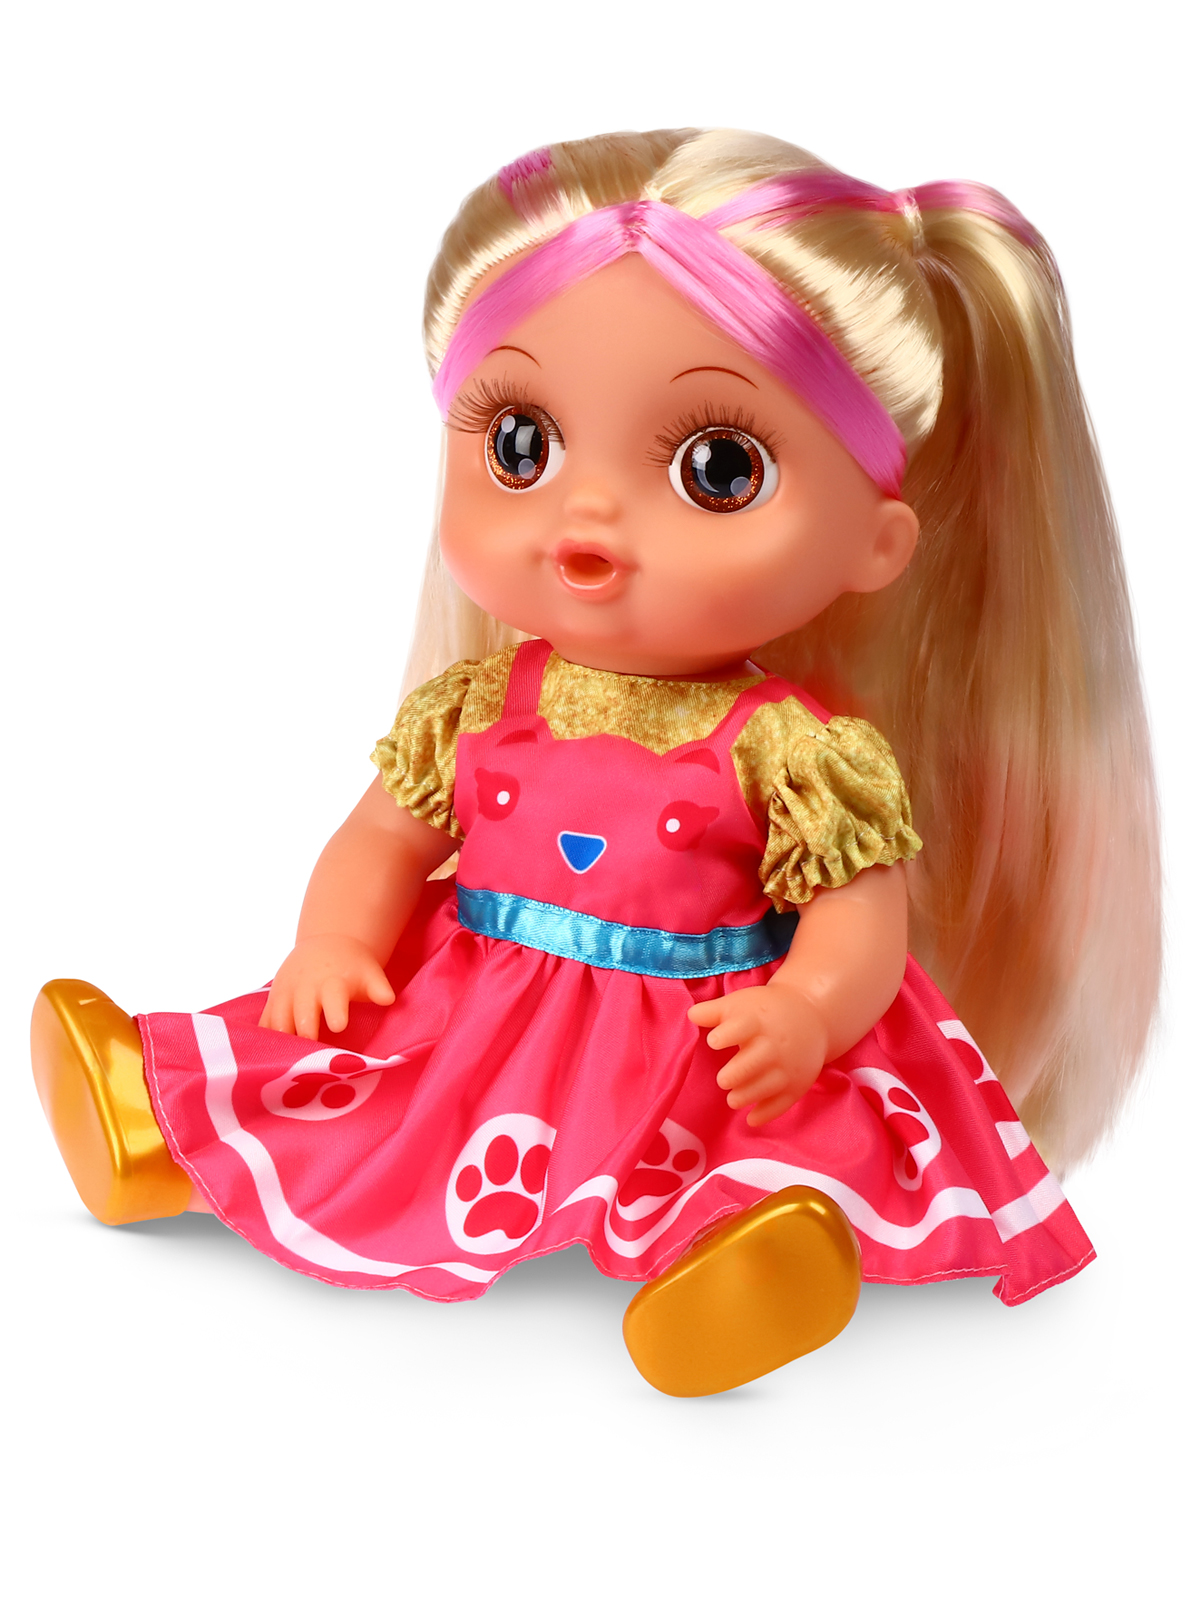 Кукла AMORE BELLO С розовыми волосами бутылочка желтый горшок соска JB0211646 - фото 8